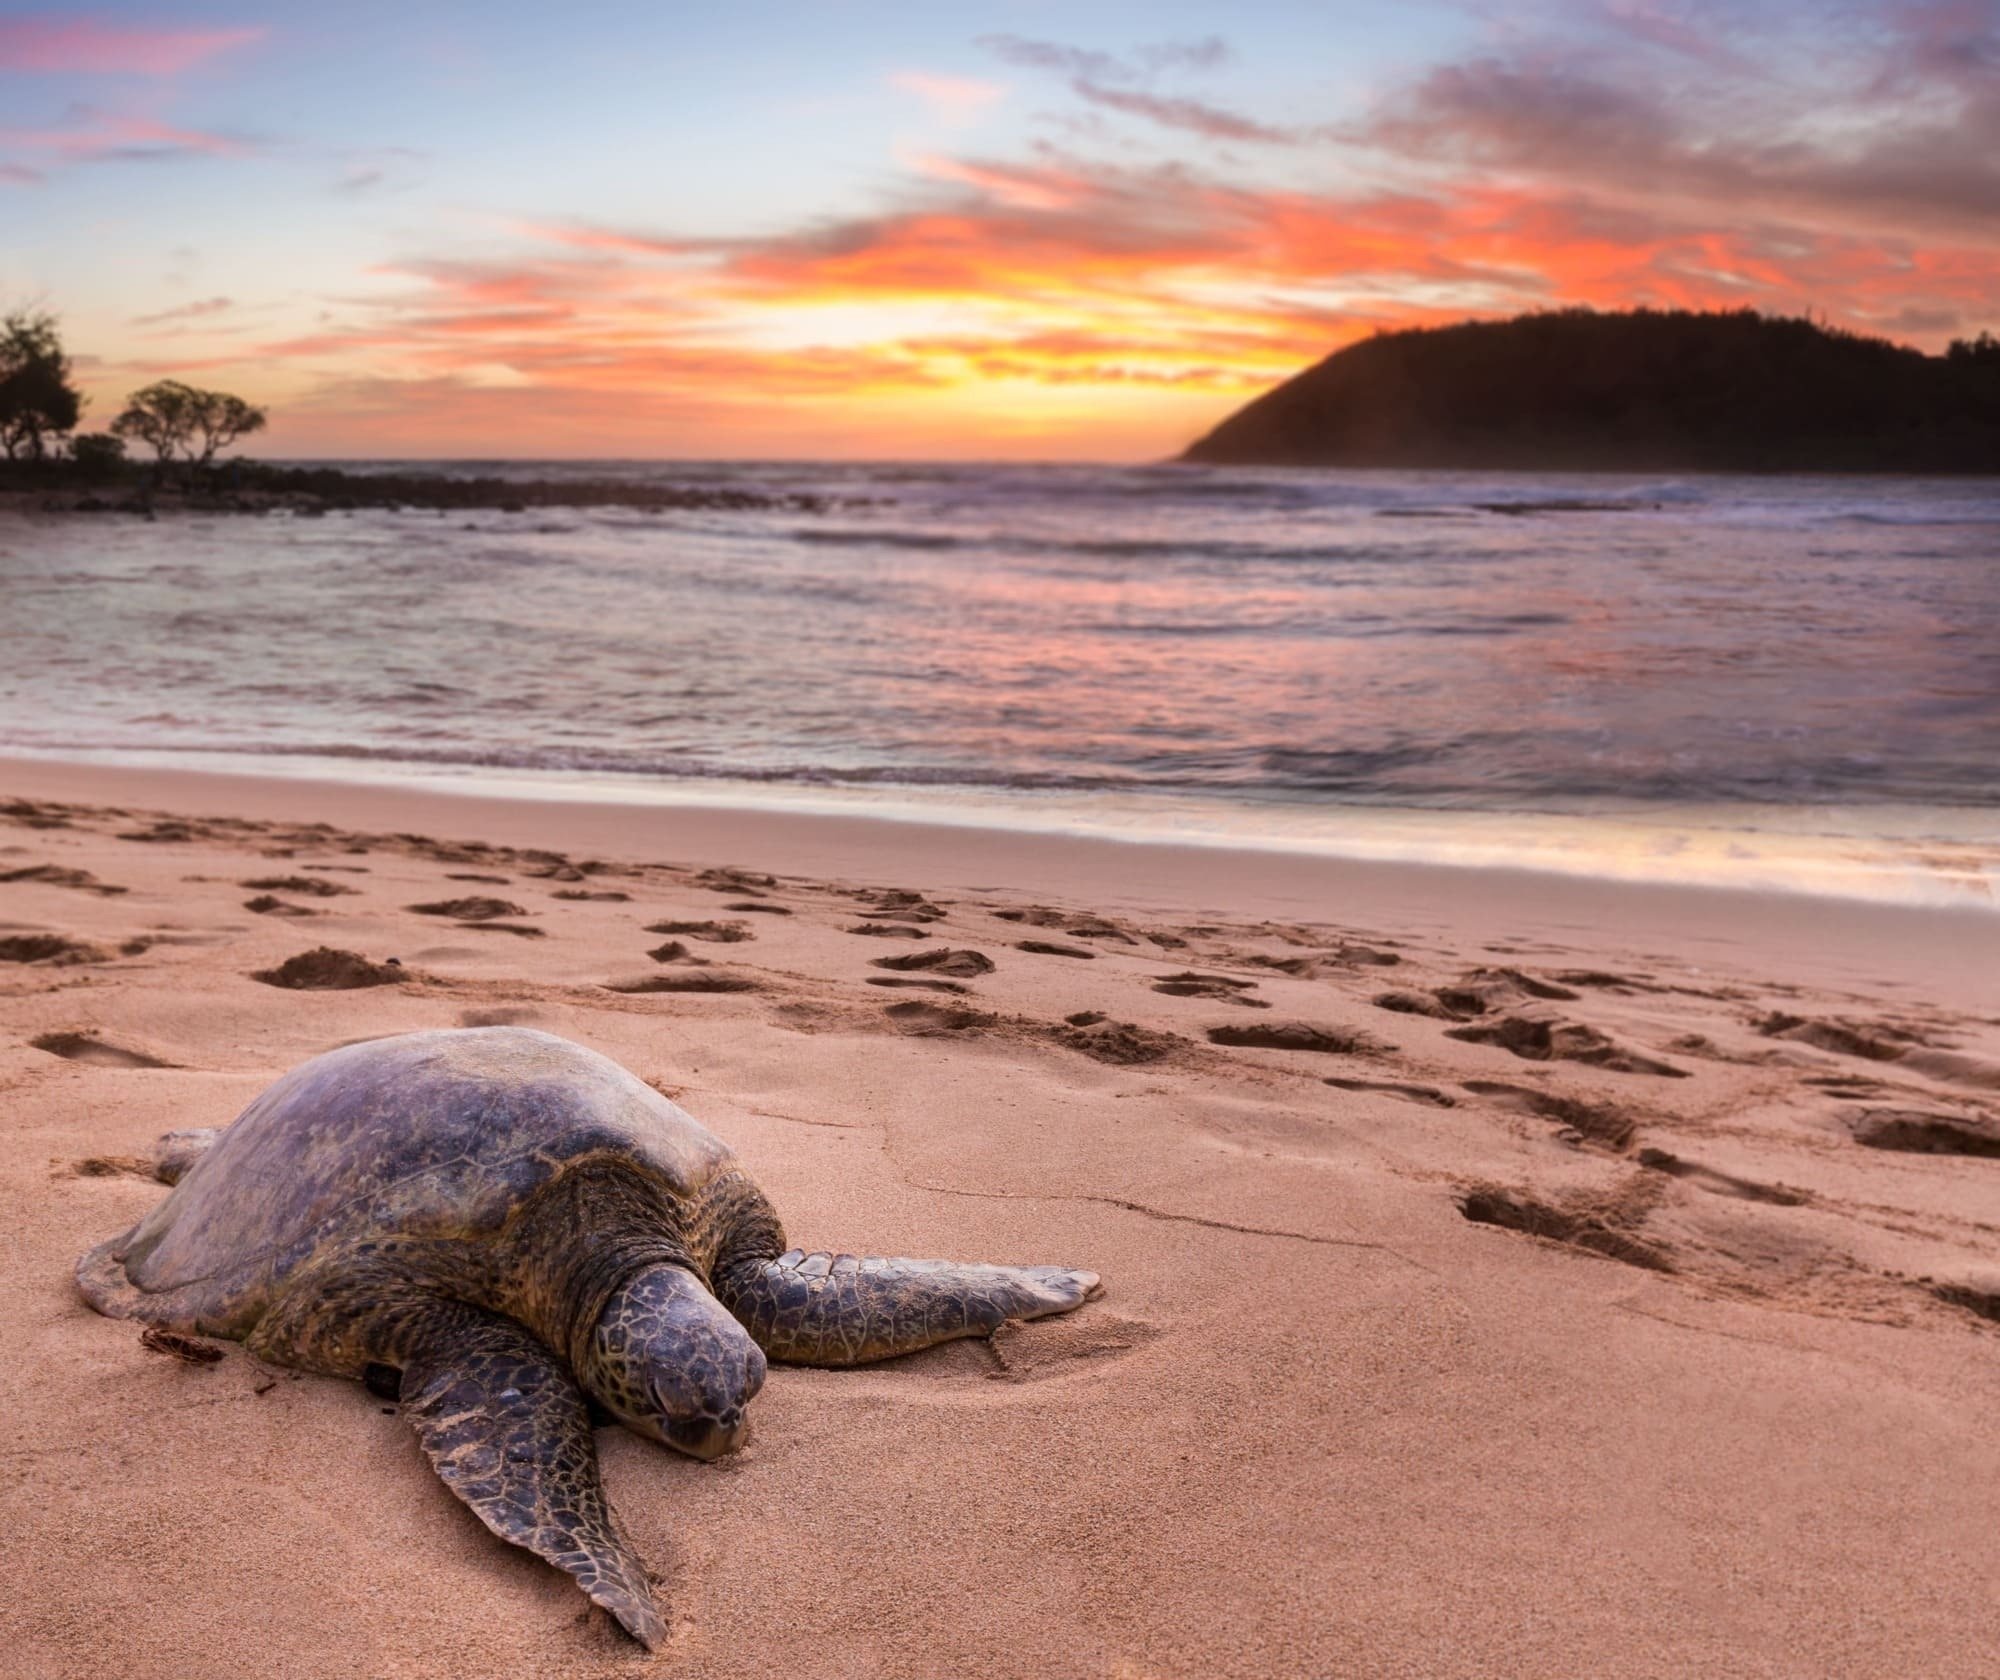 una tortuga se sienta en la playa al atardecer